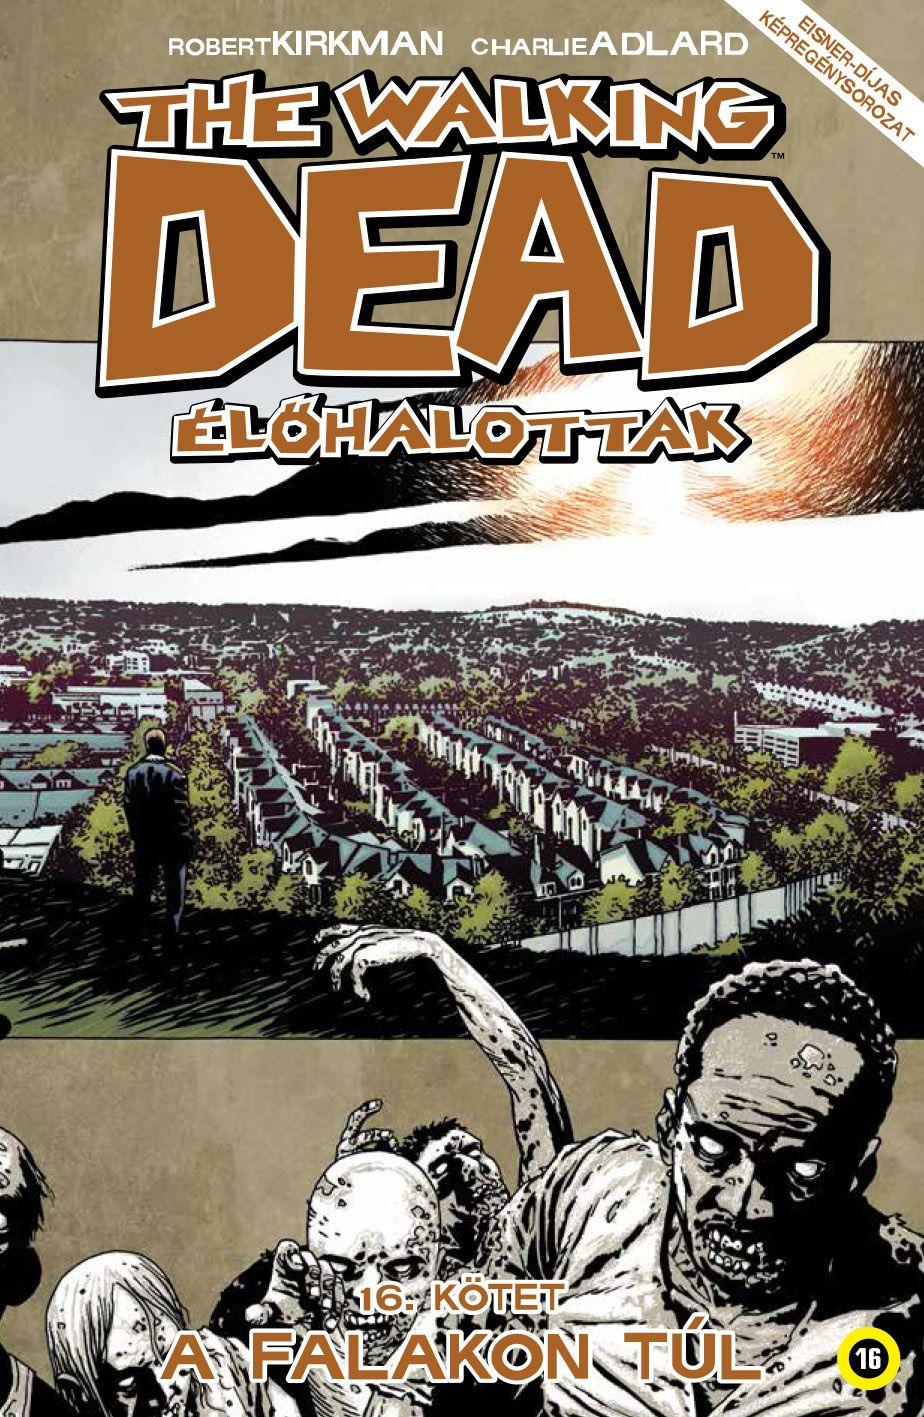 Robert Kirkman (szerző), Charlie Adlard (illusztrátor) - The Walking Dead - Élőhalottak 16. - A falakon túl